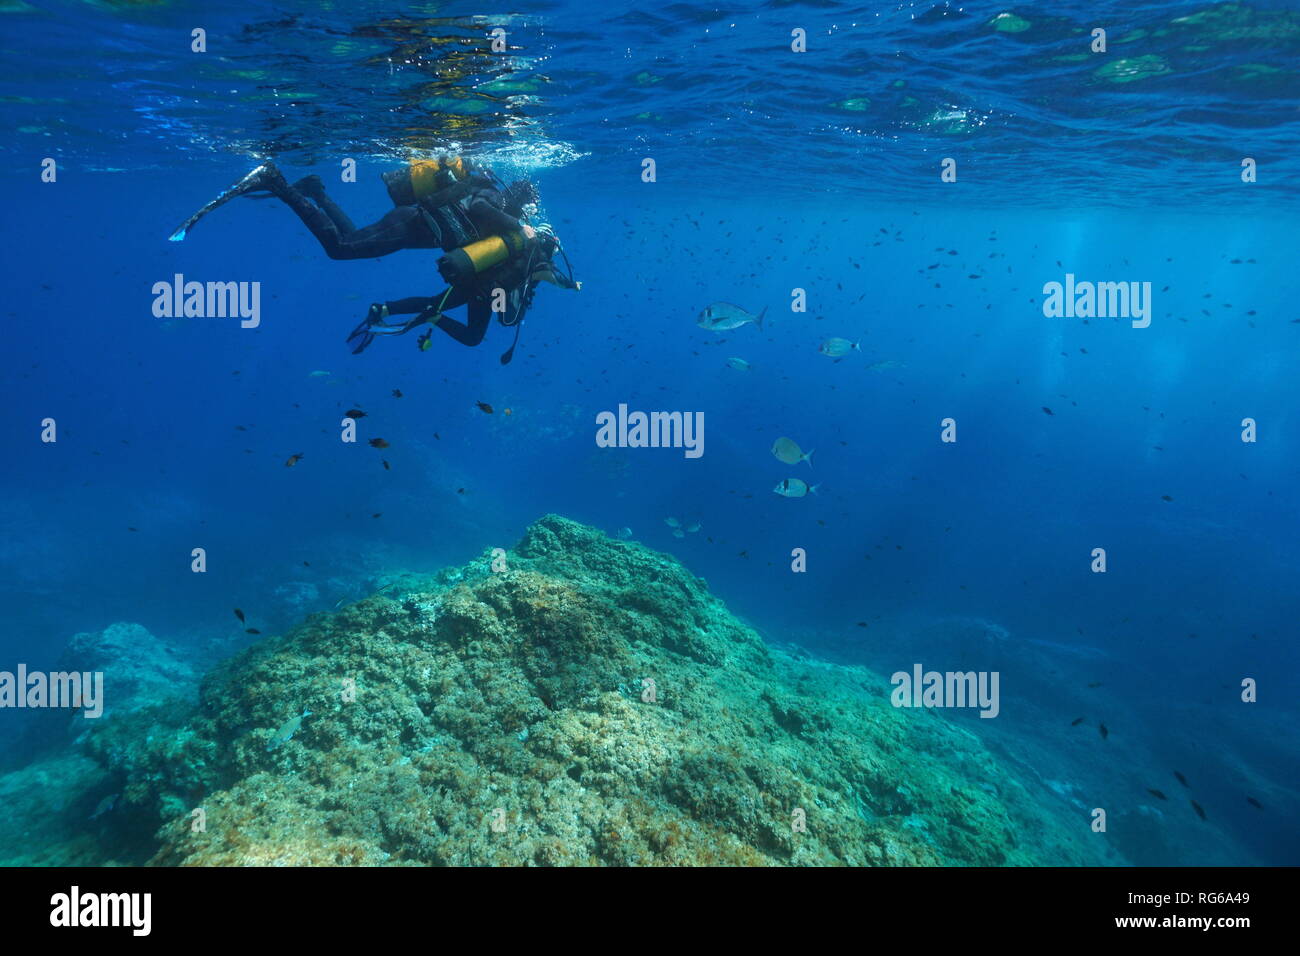 Primera inmersión de buceo, un hombre y un niño mira peces bajo el agua, el mar Mediterráneo, Francia Foto de stock